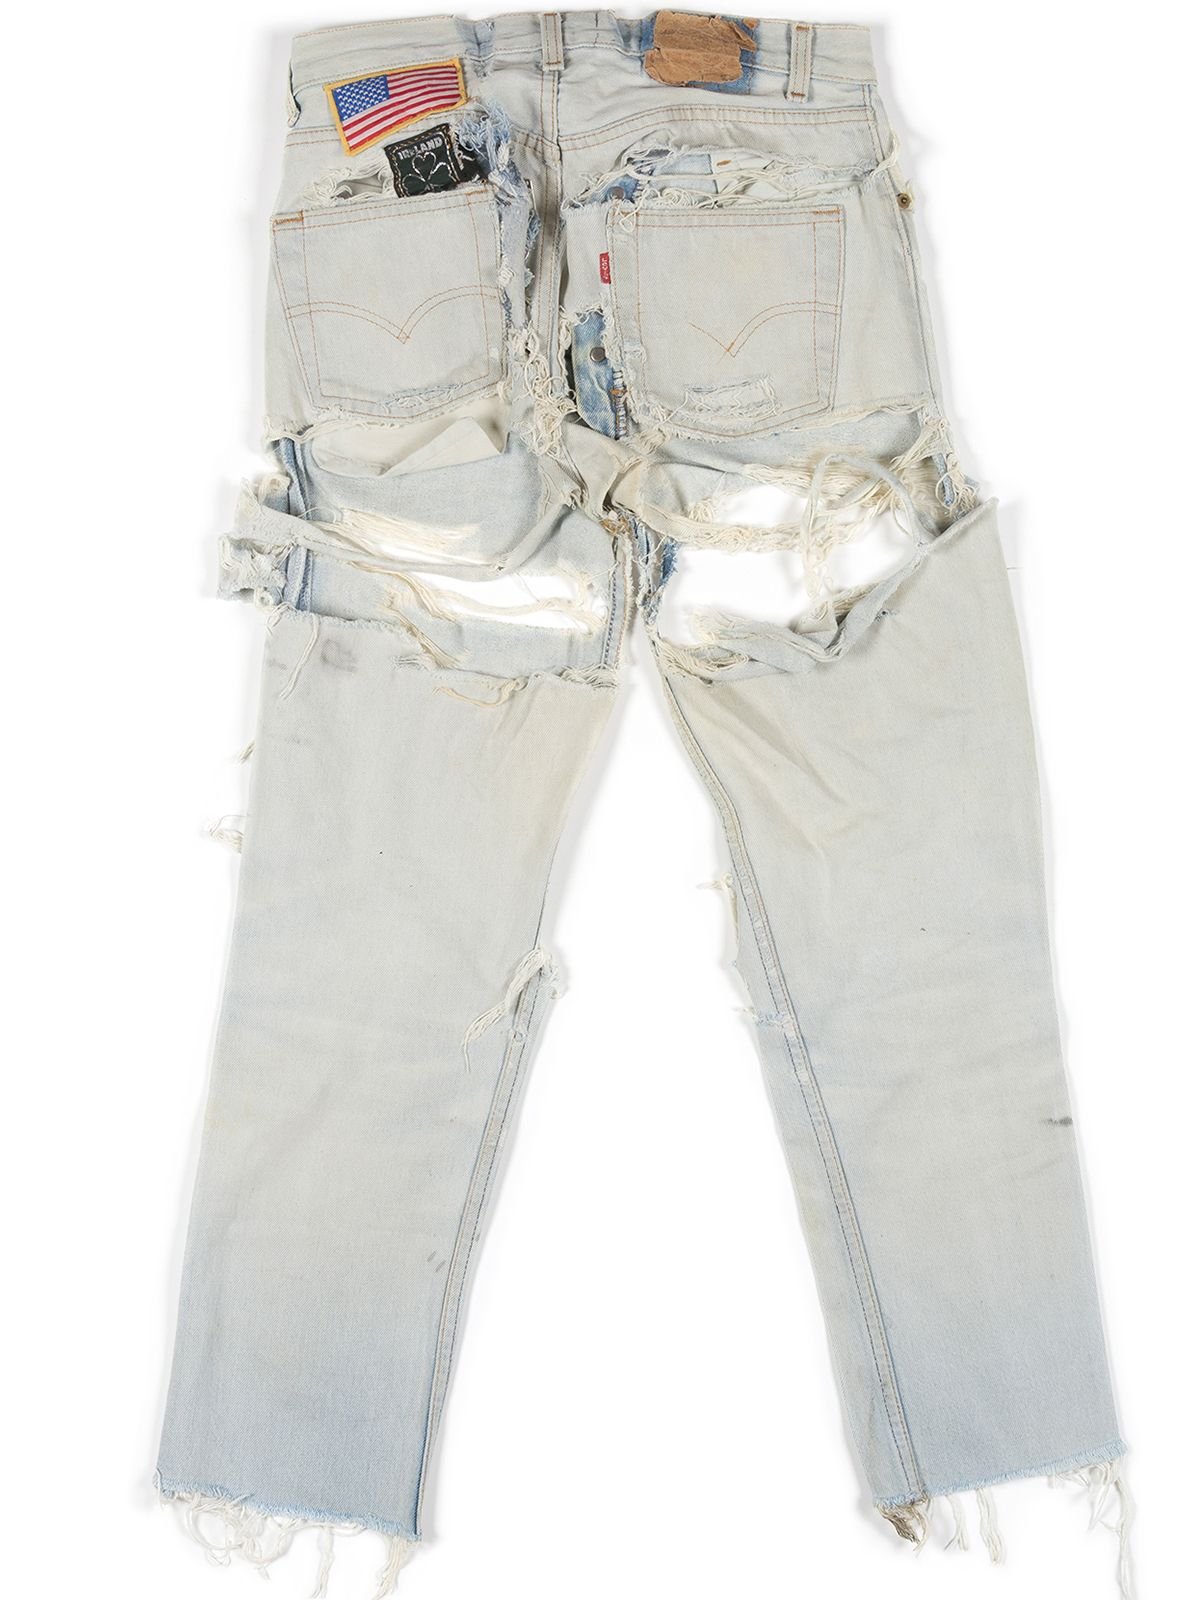 Levis 501 Jeans